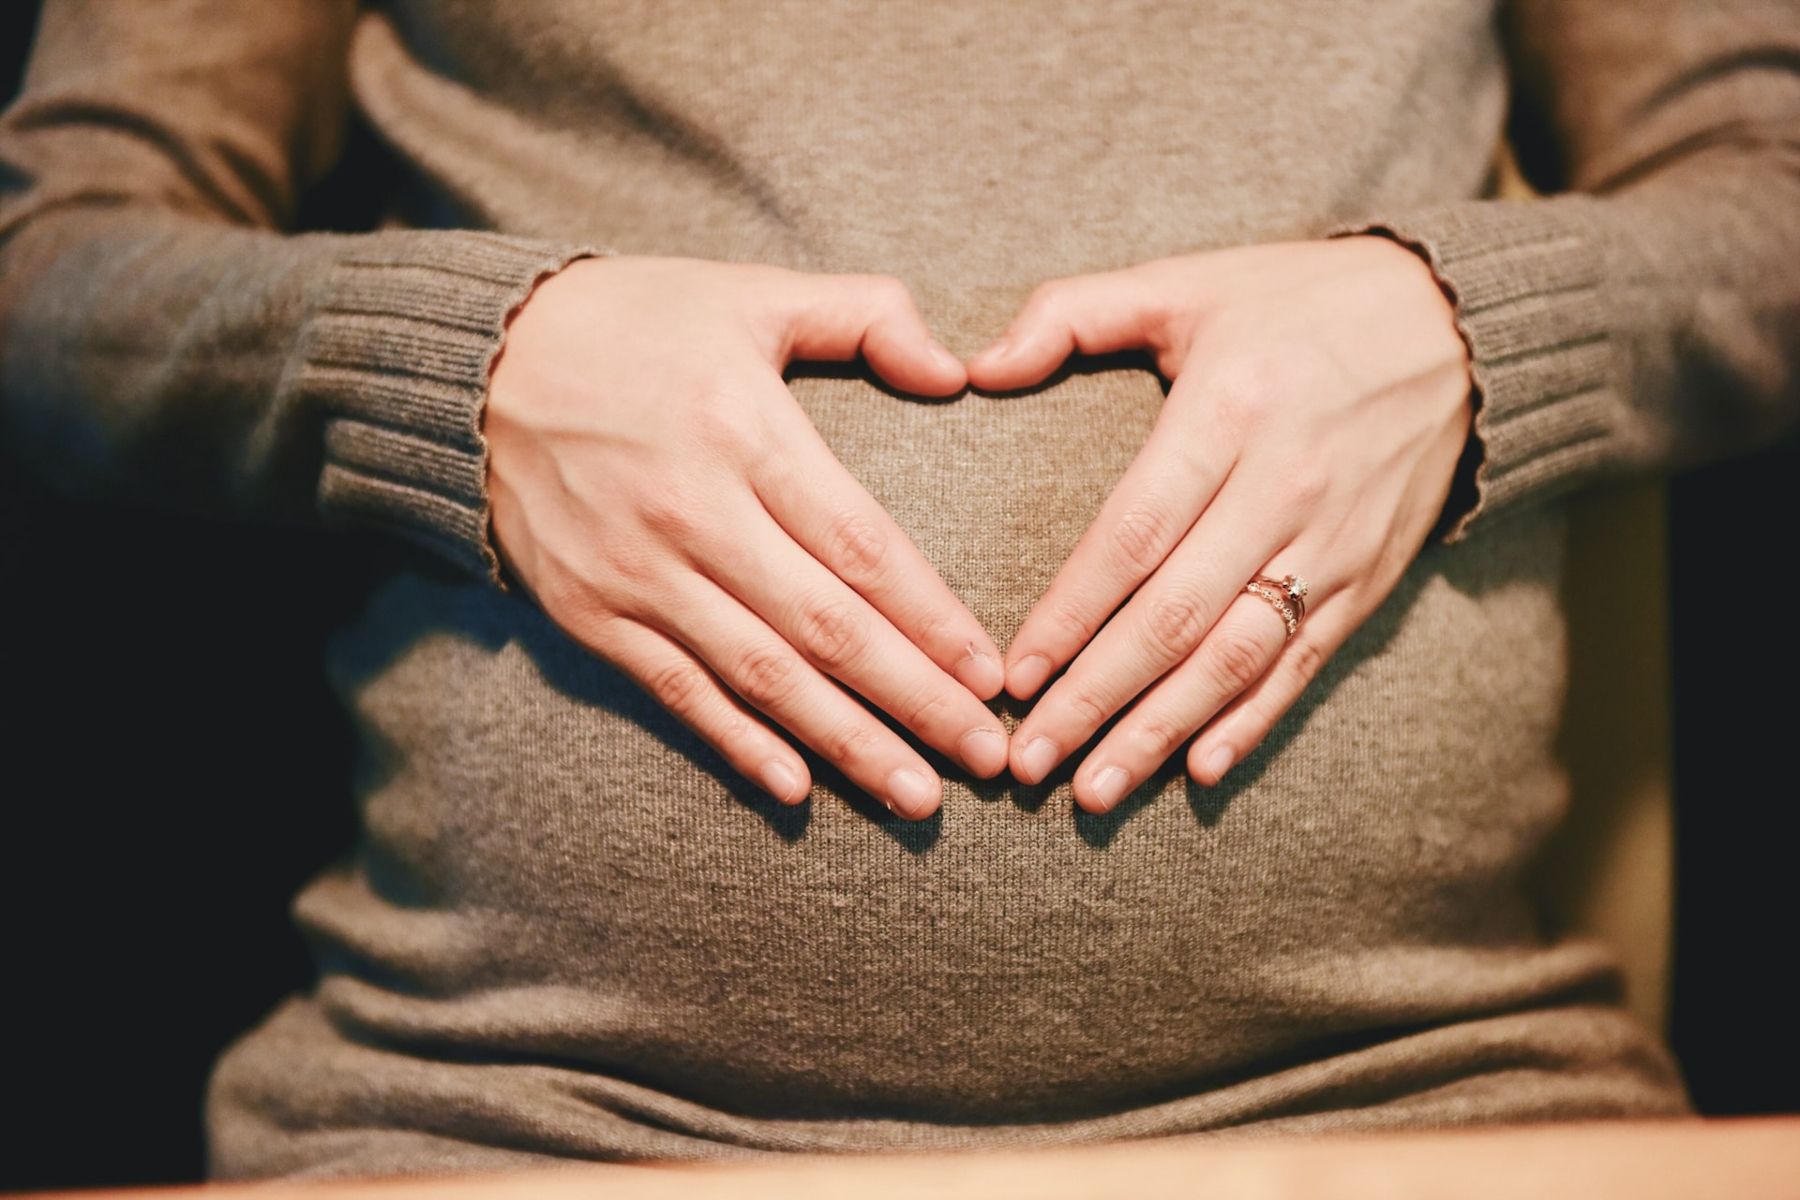 ΗΠΑ: Πώς θα μπορούσαν να αποφευχθούν οι θάνατοι που σχετίζονται με την εγκυμοσύνη;